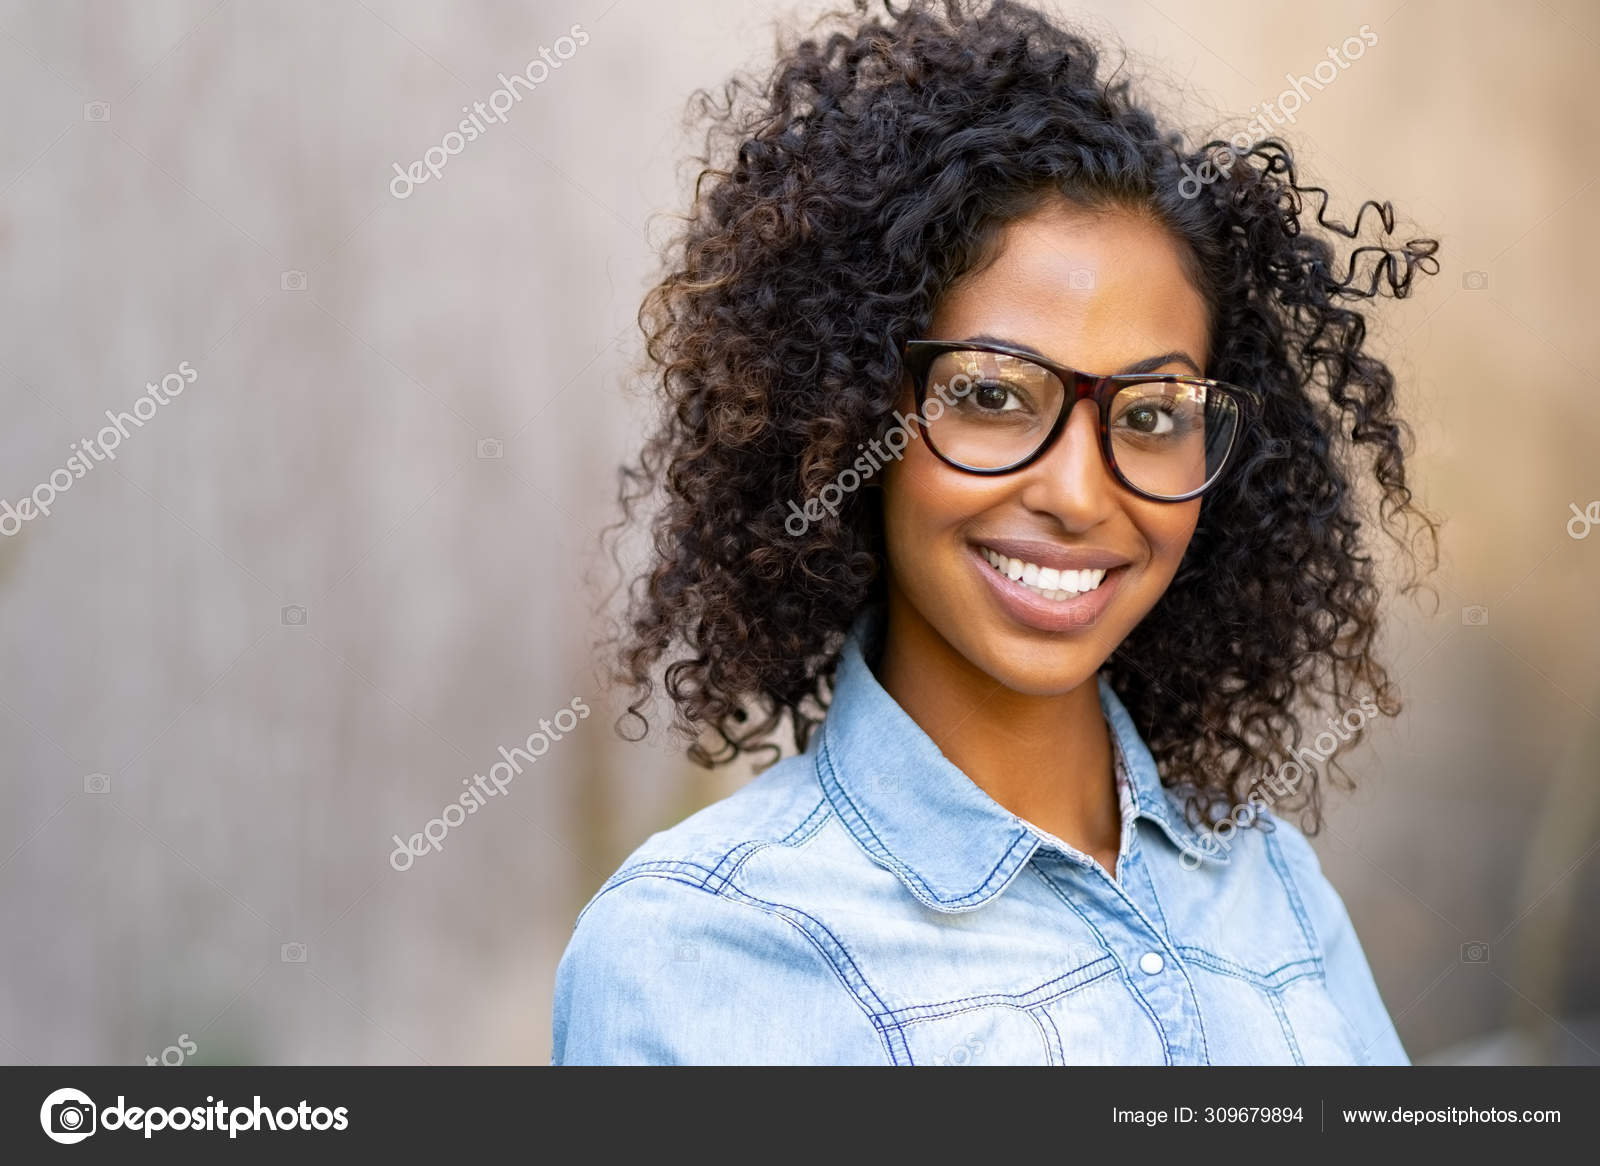 चश्में के लिए hairstyles For Girls | Hairstyles For Girls With Glasses For  Office/ College/Work - YouTube